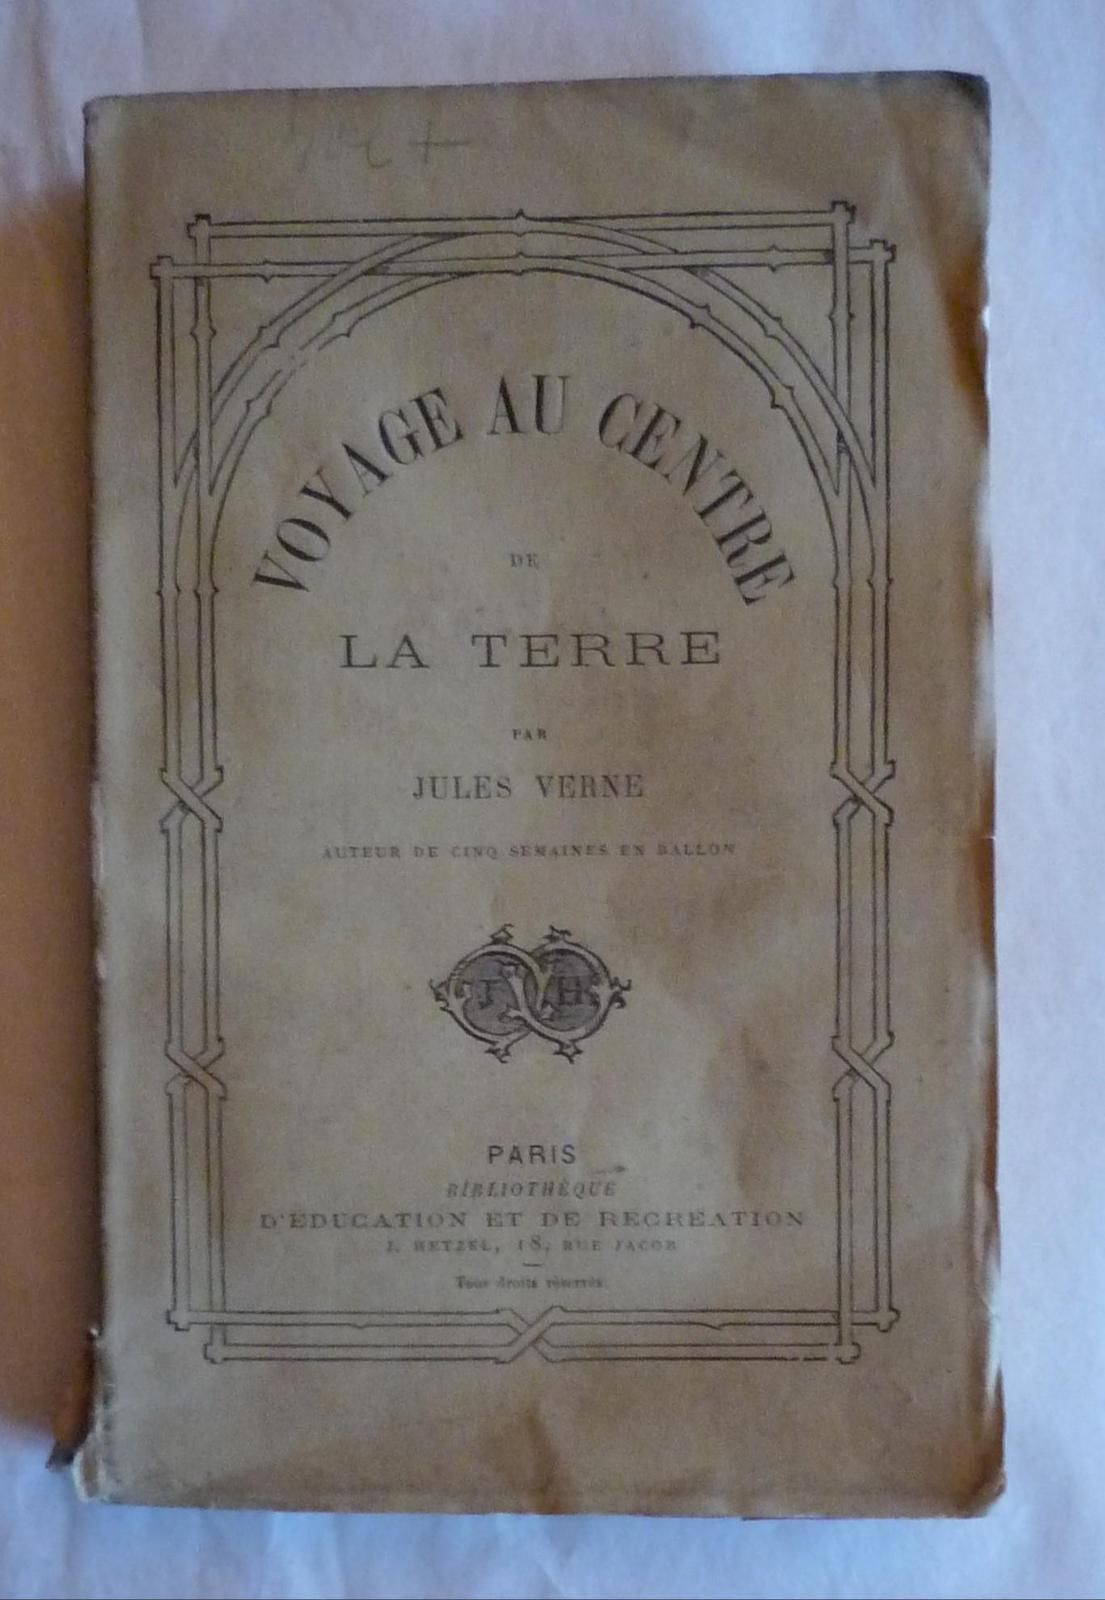 Jules Verne, Shori: Voyage au centre de la terre (French language)